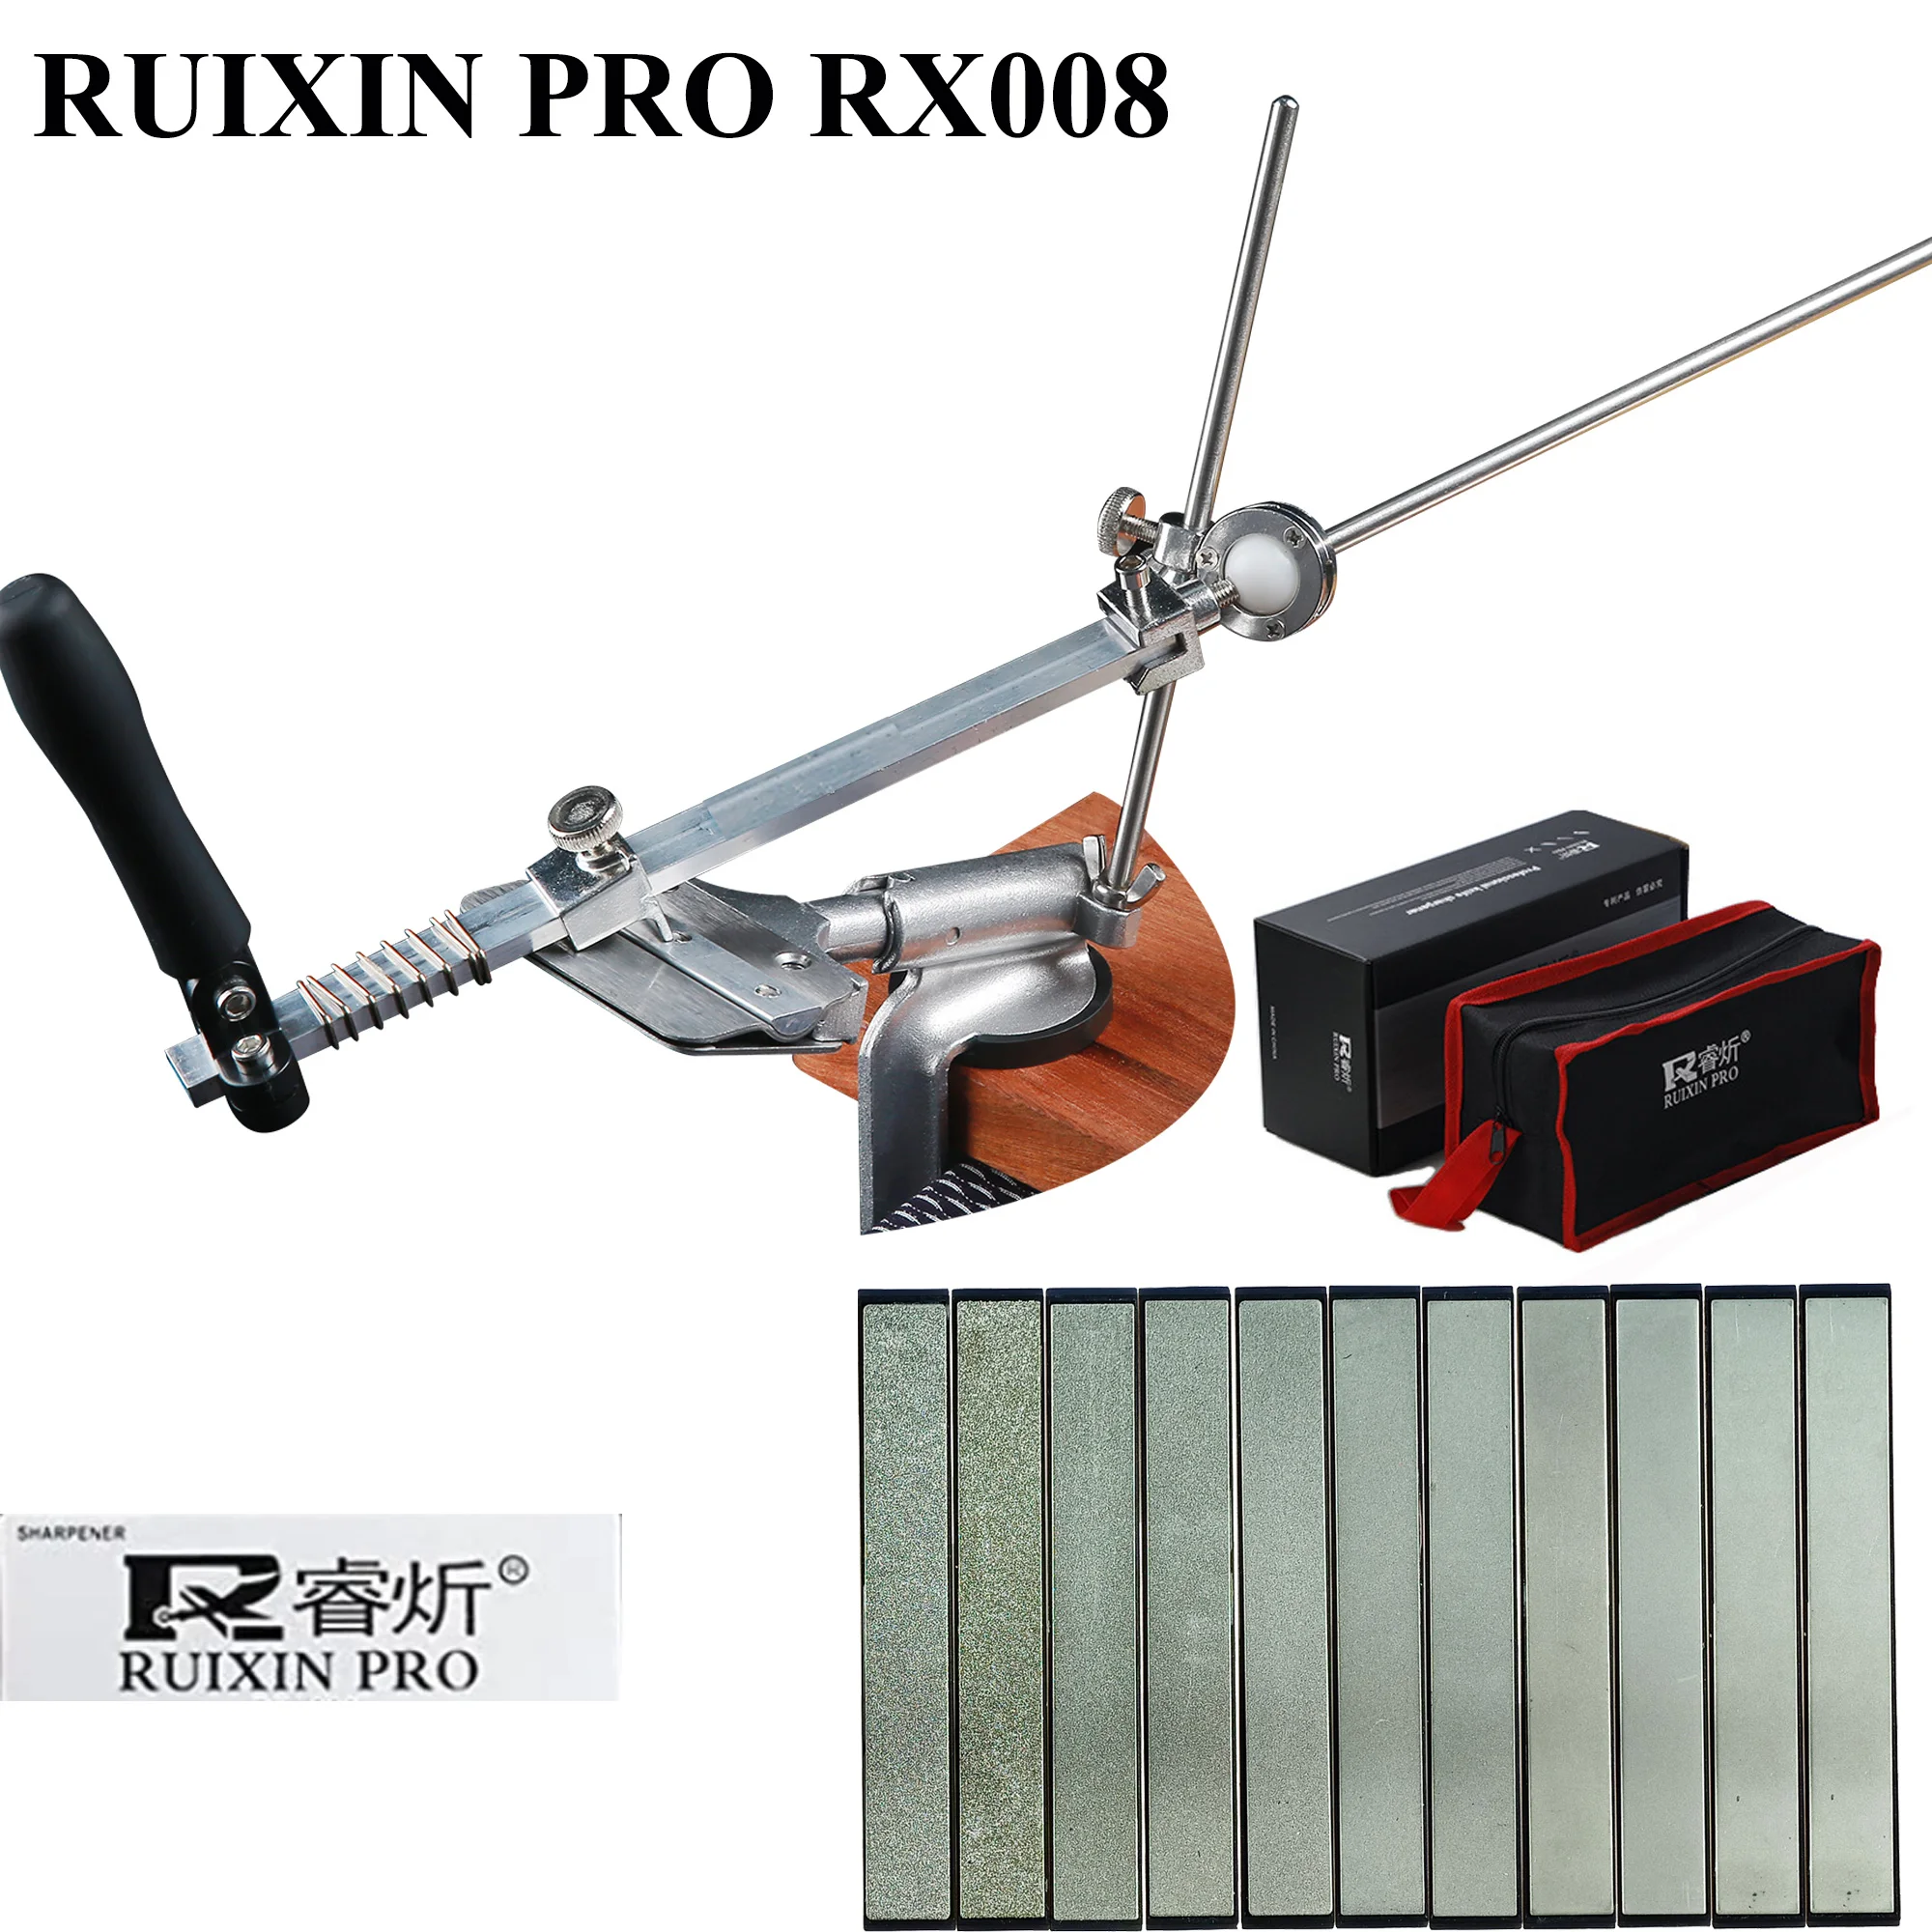 ruixin-pro-rx008-affilacoltelli-professionale-rotazione-di-360-gradi-flip-design-kit-per-affilare-i-coltelli-da-cucina-in-acciaio-inossidabile